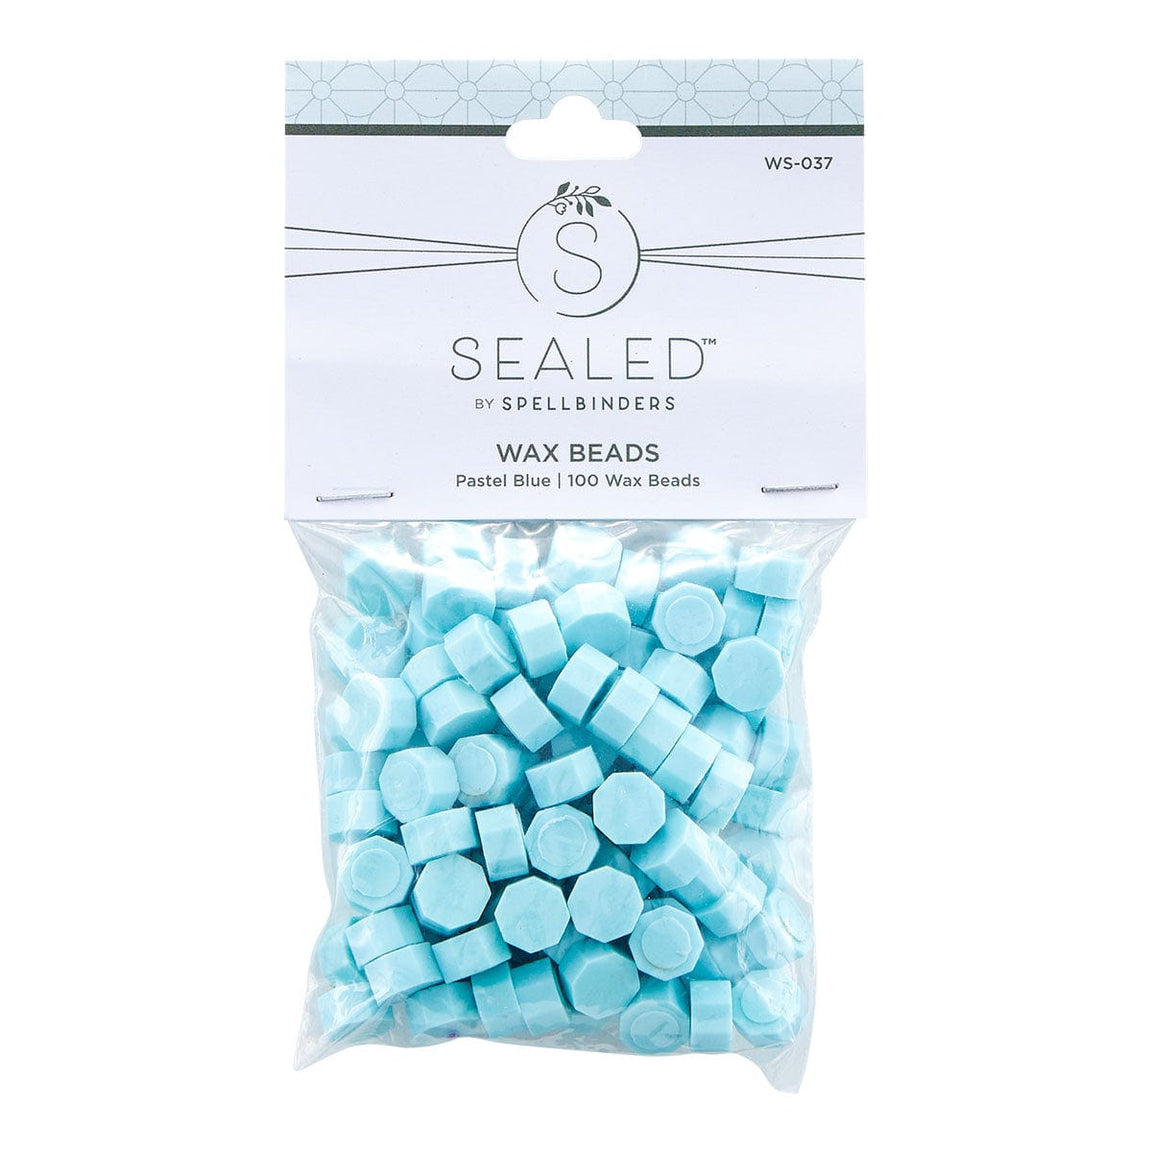 Spellbinders Pastel Blue Wax Beads - Sealed by Spellbinders Collection